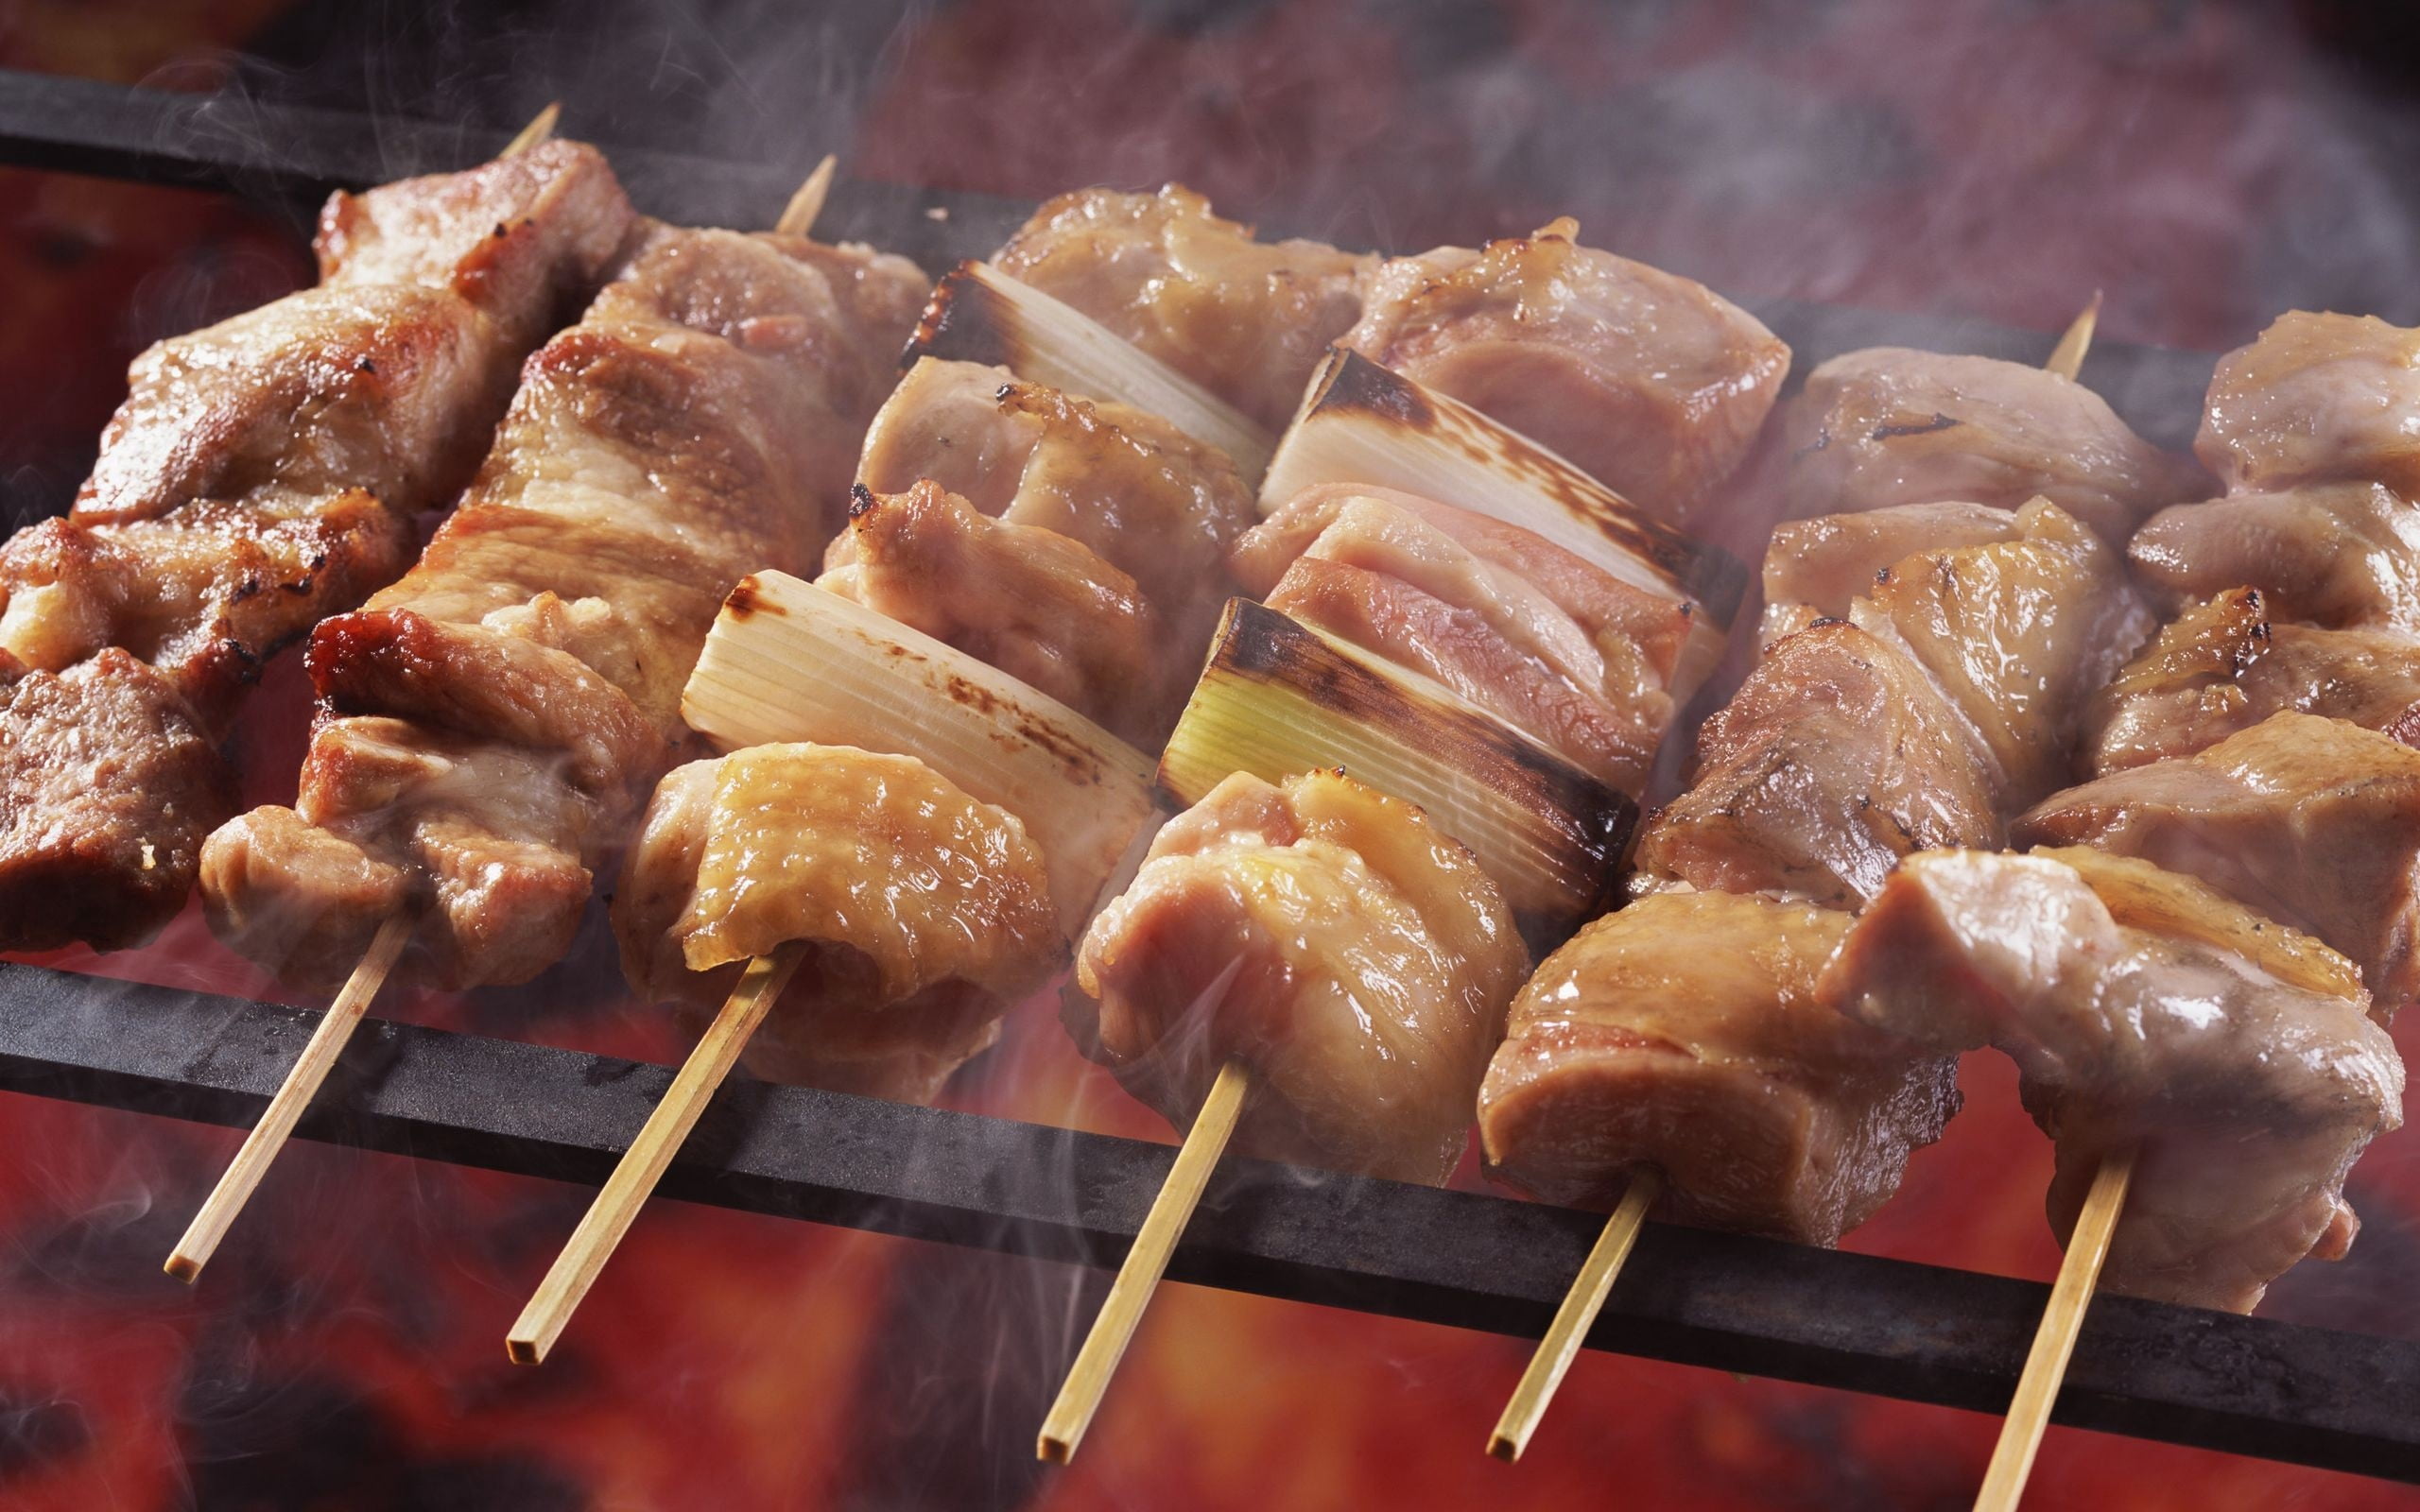 pork barbecue, kebab, skewers, grilled, meat, food, beef, cooking